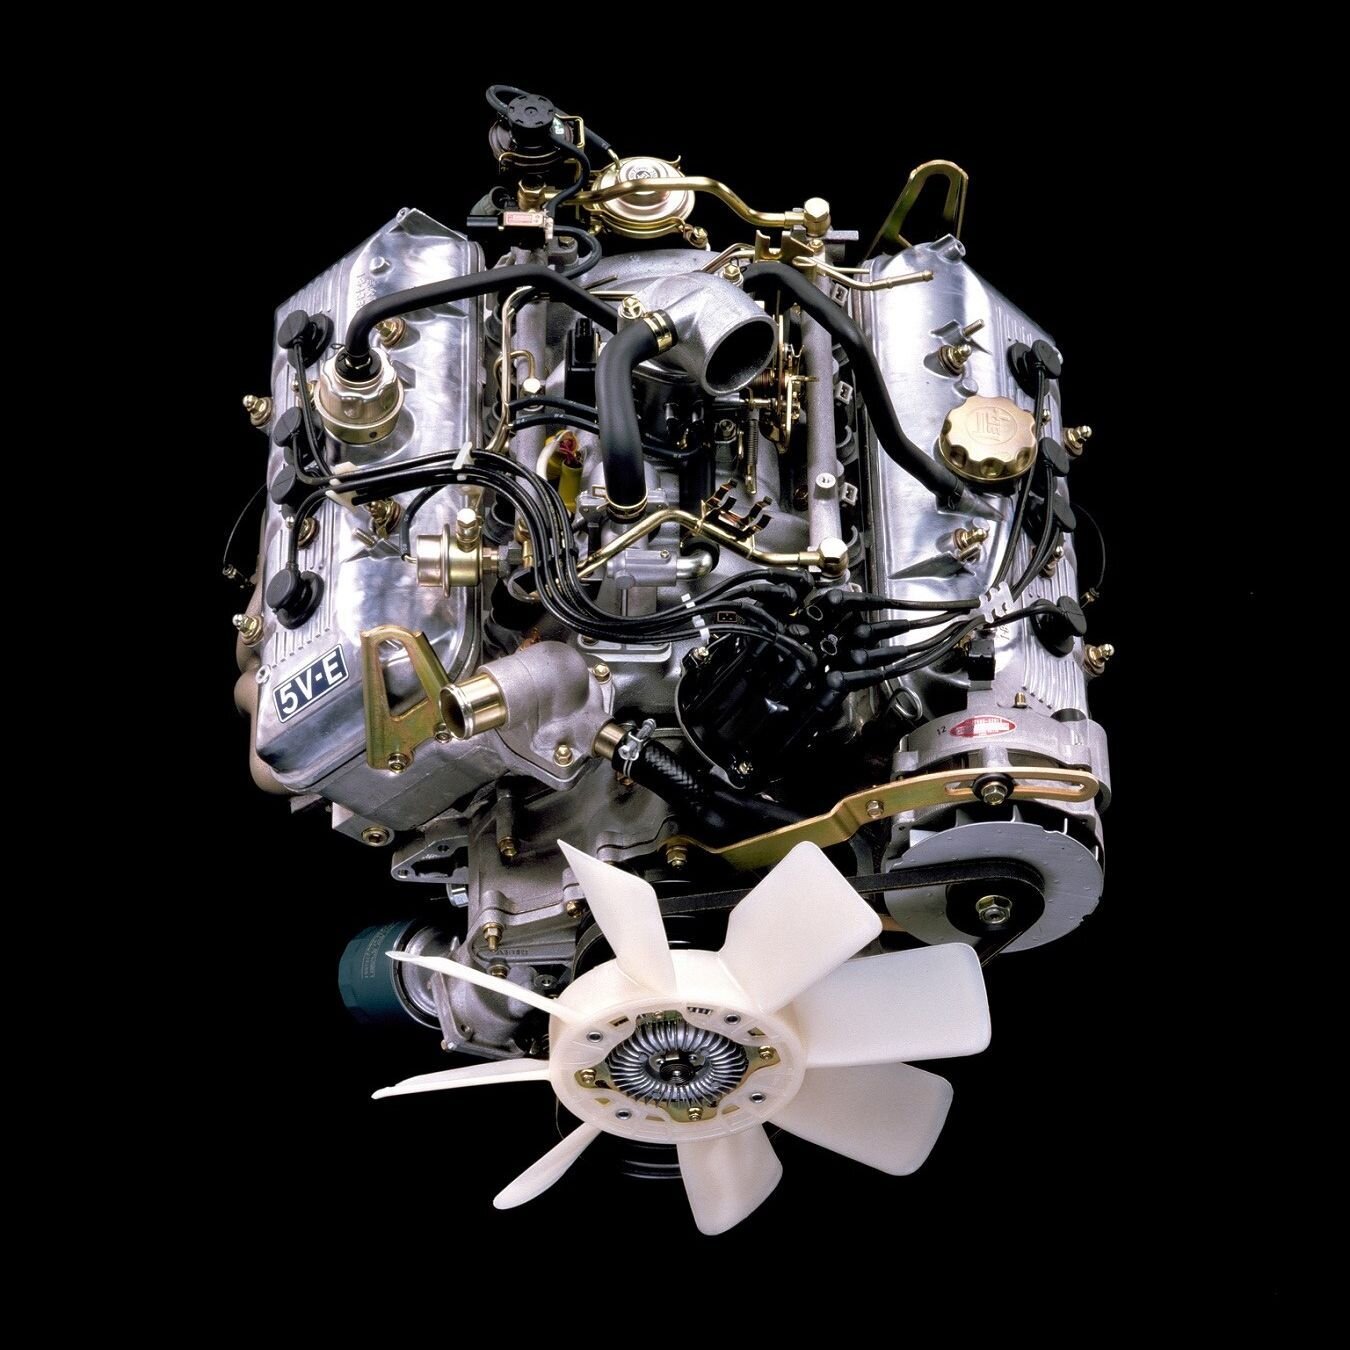 Двигатель 5V-E был предшественником моторов серии UZ